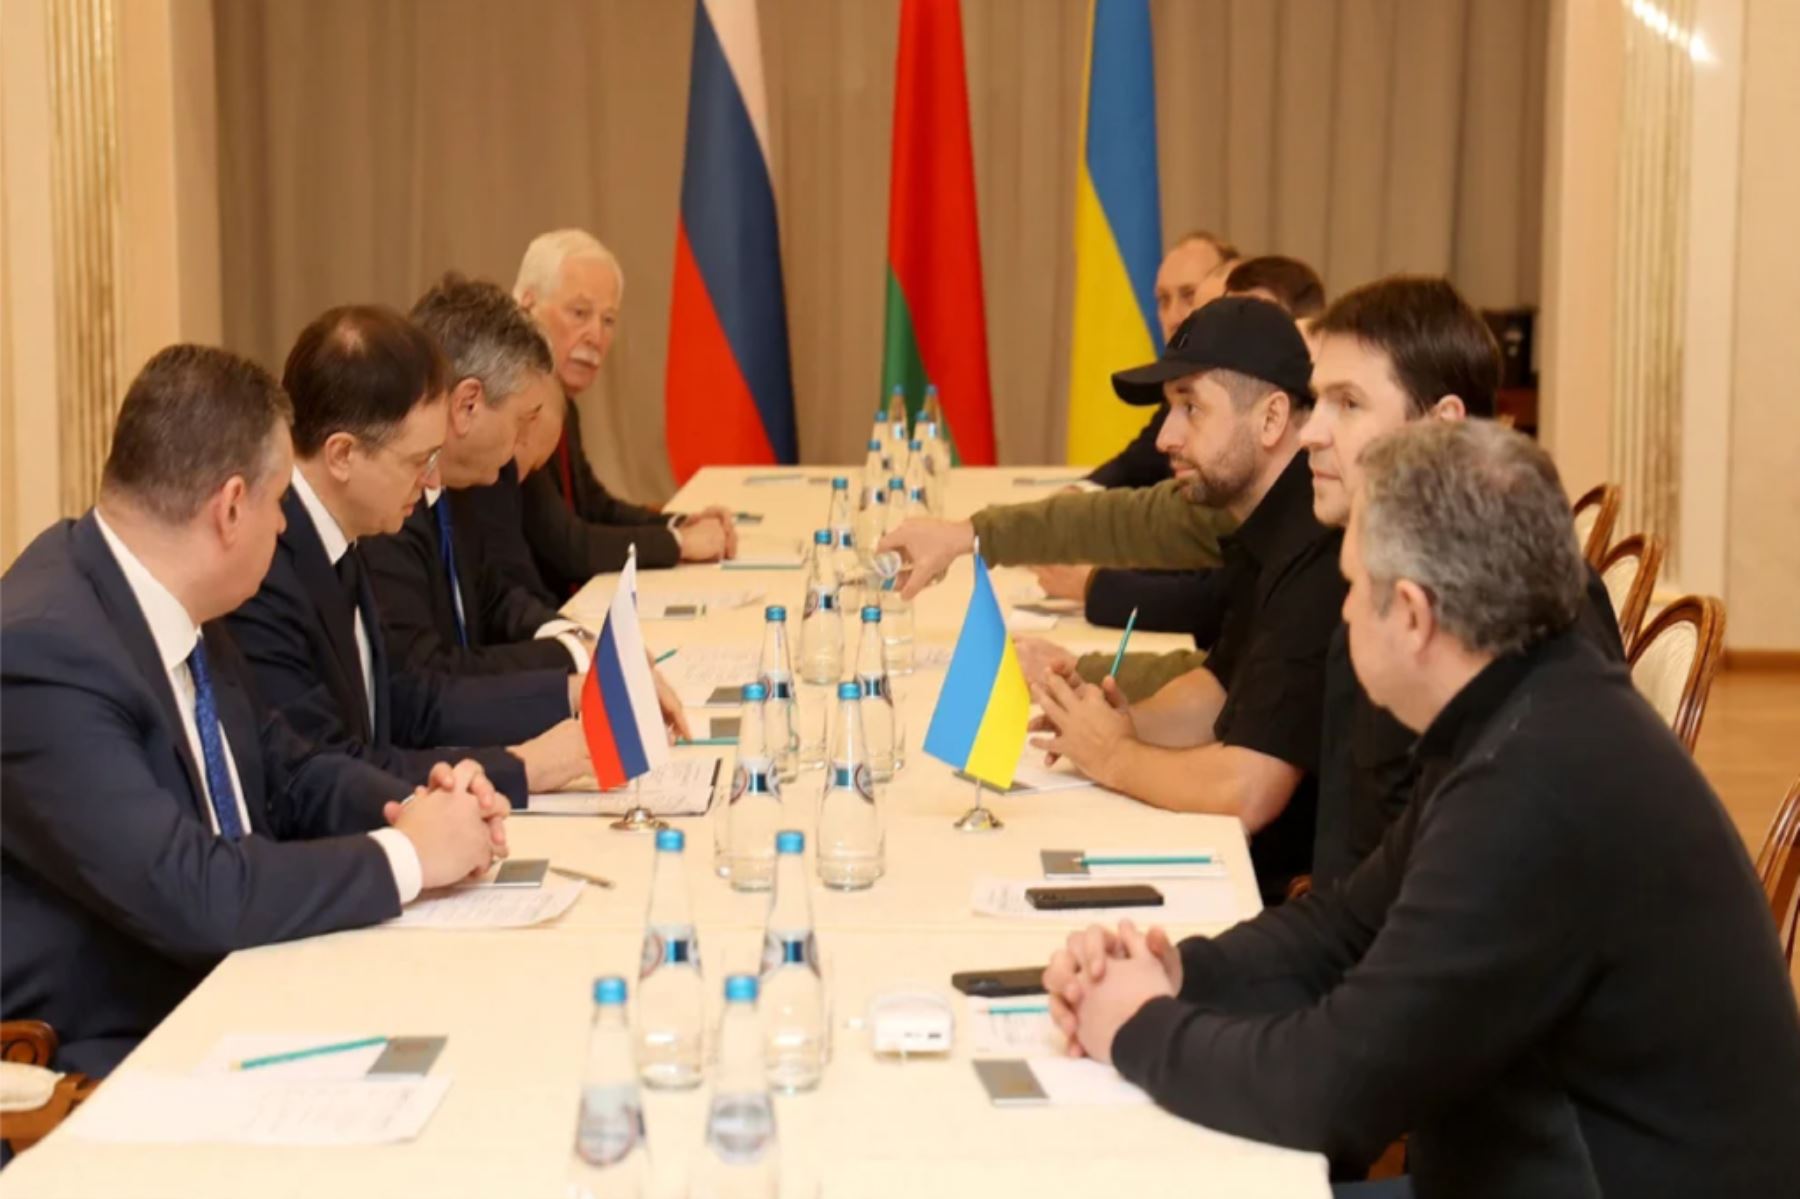 La cuarta ronda de negociaciones entre Rusia y Ucrania se inició el lunes en videoconferencia. Foto: internet/medios.